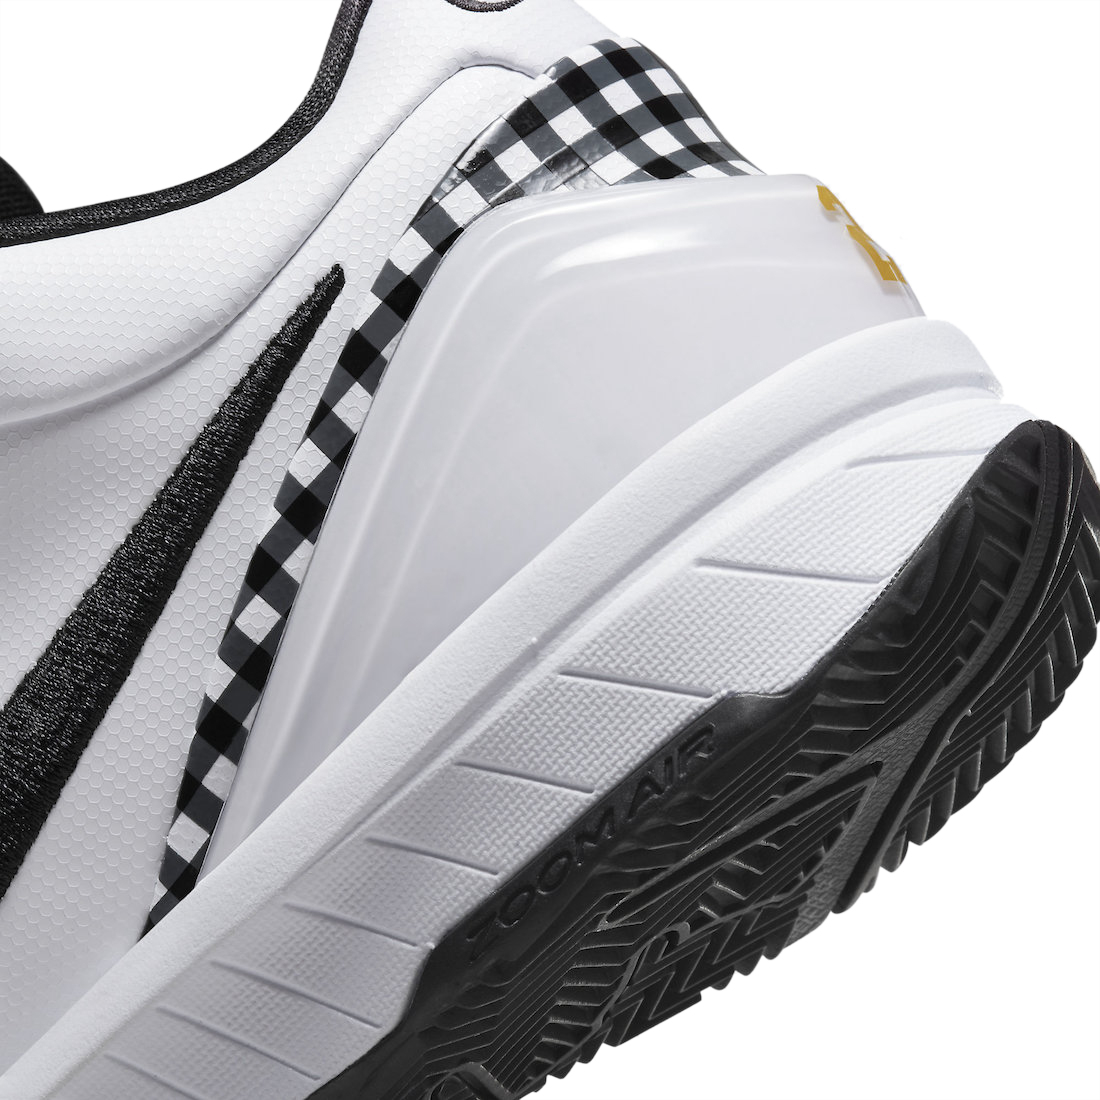 Nike Kobe 4 Protro Mambacita - May 2023 - FJ9363-100